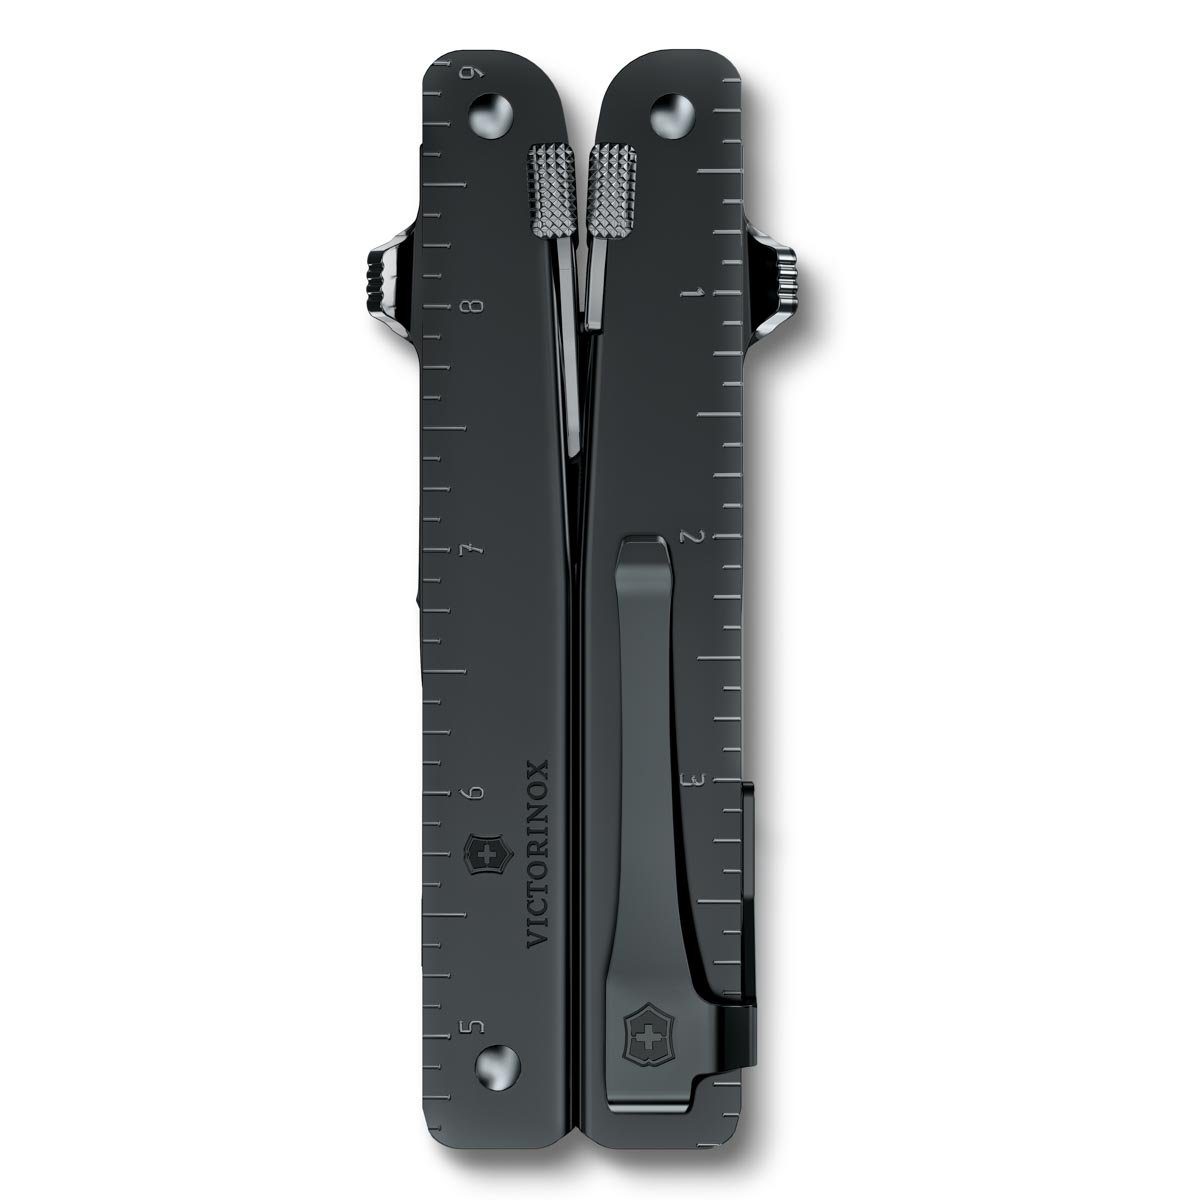 Victorinox Taschenmesser Swiss Blister Clip BS, schwarz, Tool